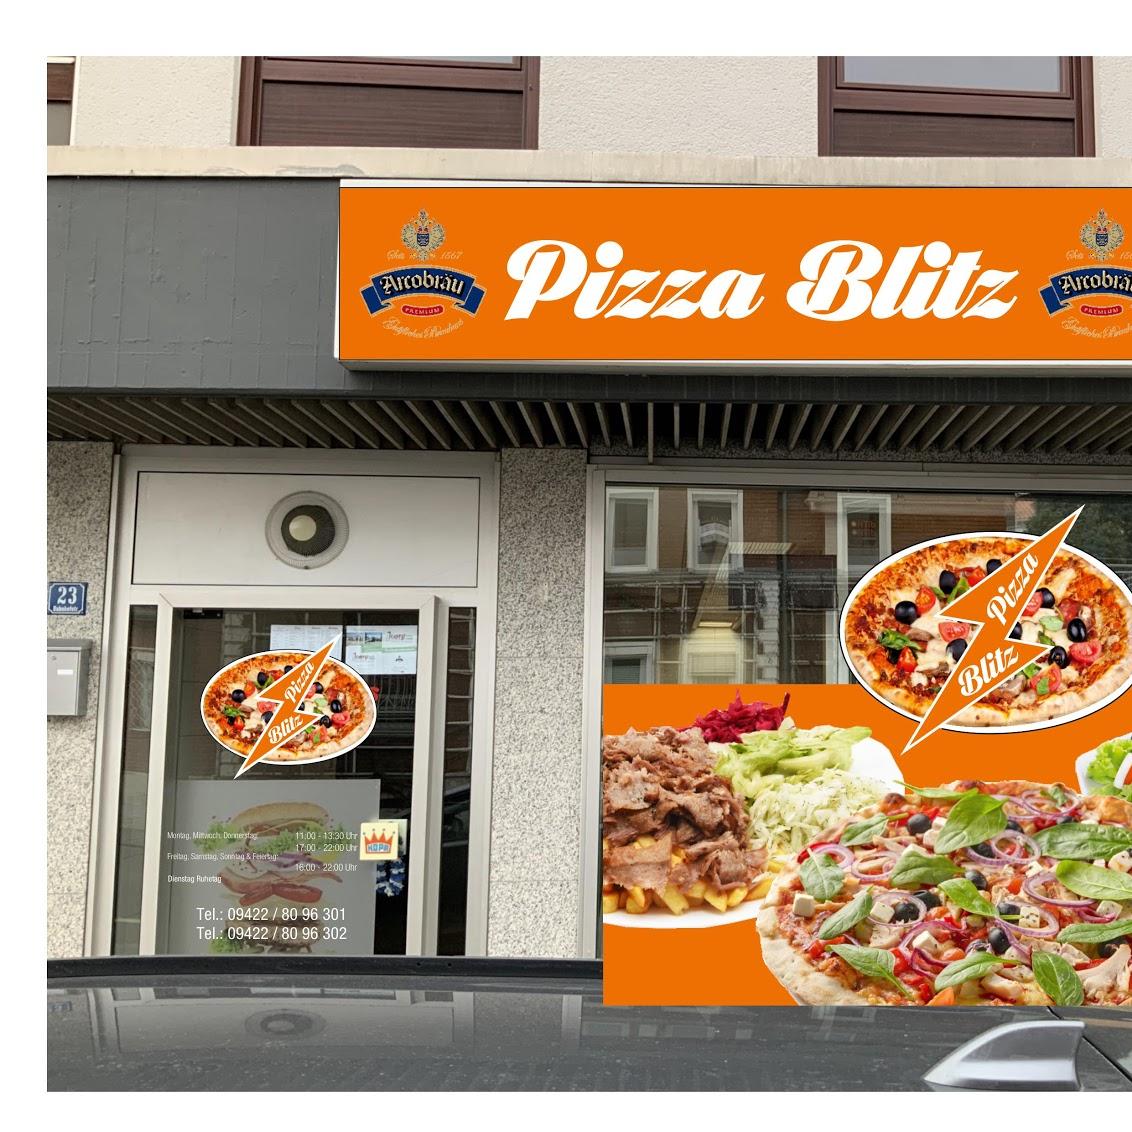 Restaurant "Pizza Blitz" in Bogen